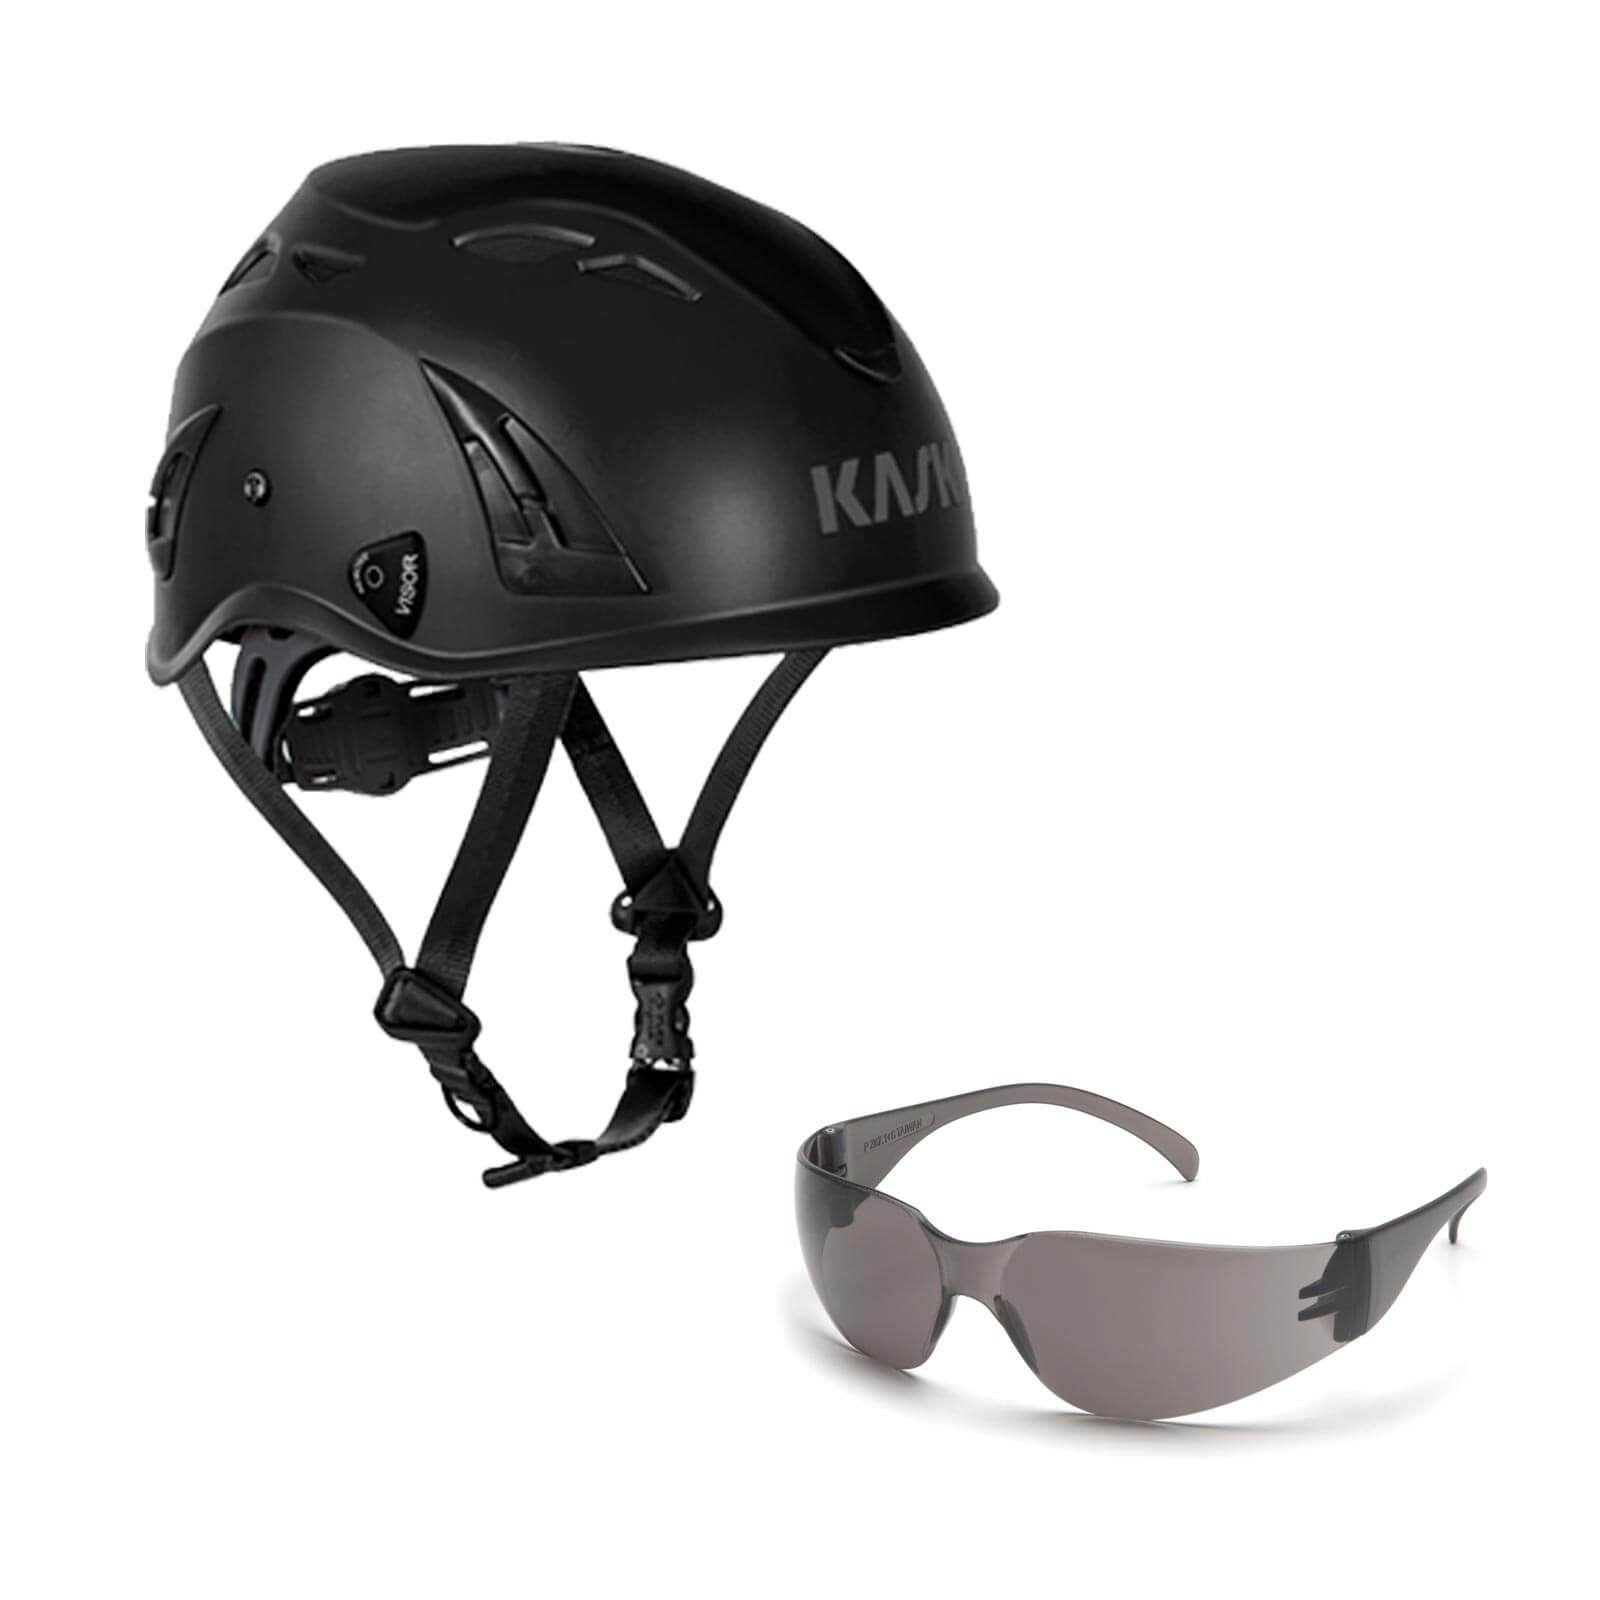 AQ Schutzbrille Kask Schutzhelm Bergsteigerhelm, Plasma schwarz Industriekletterhelm + klar